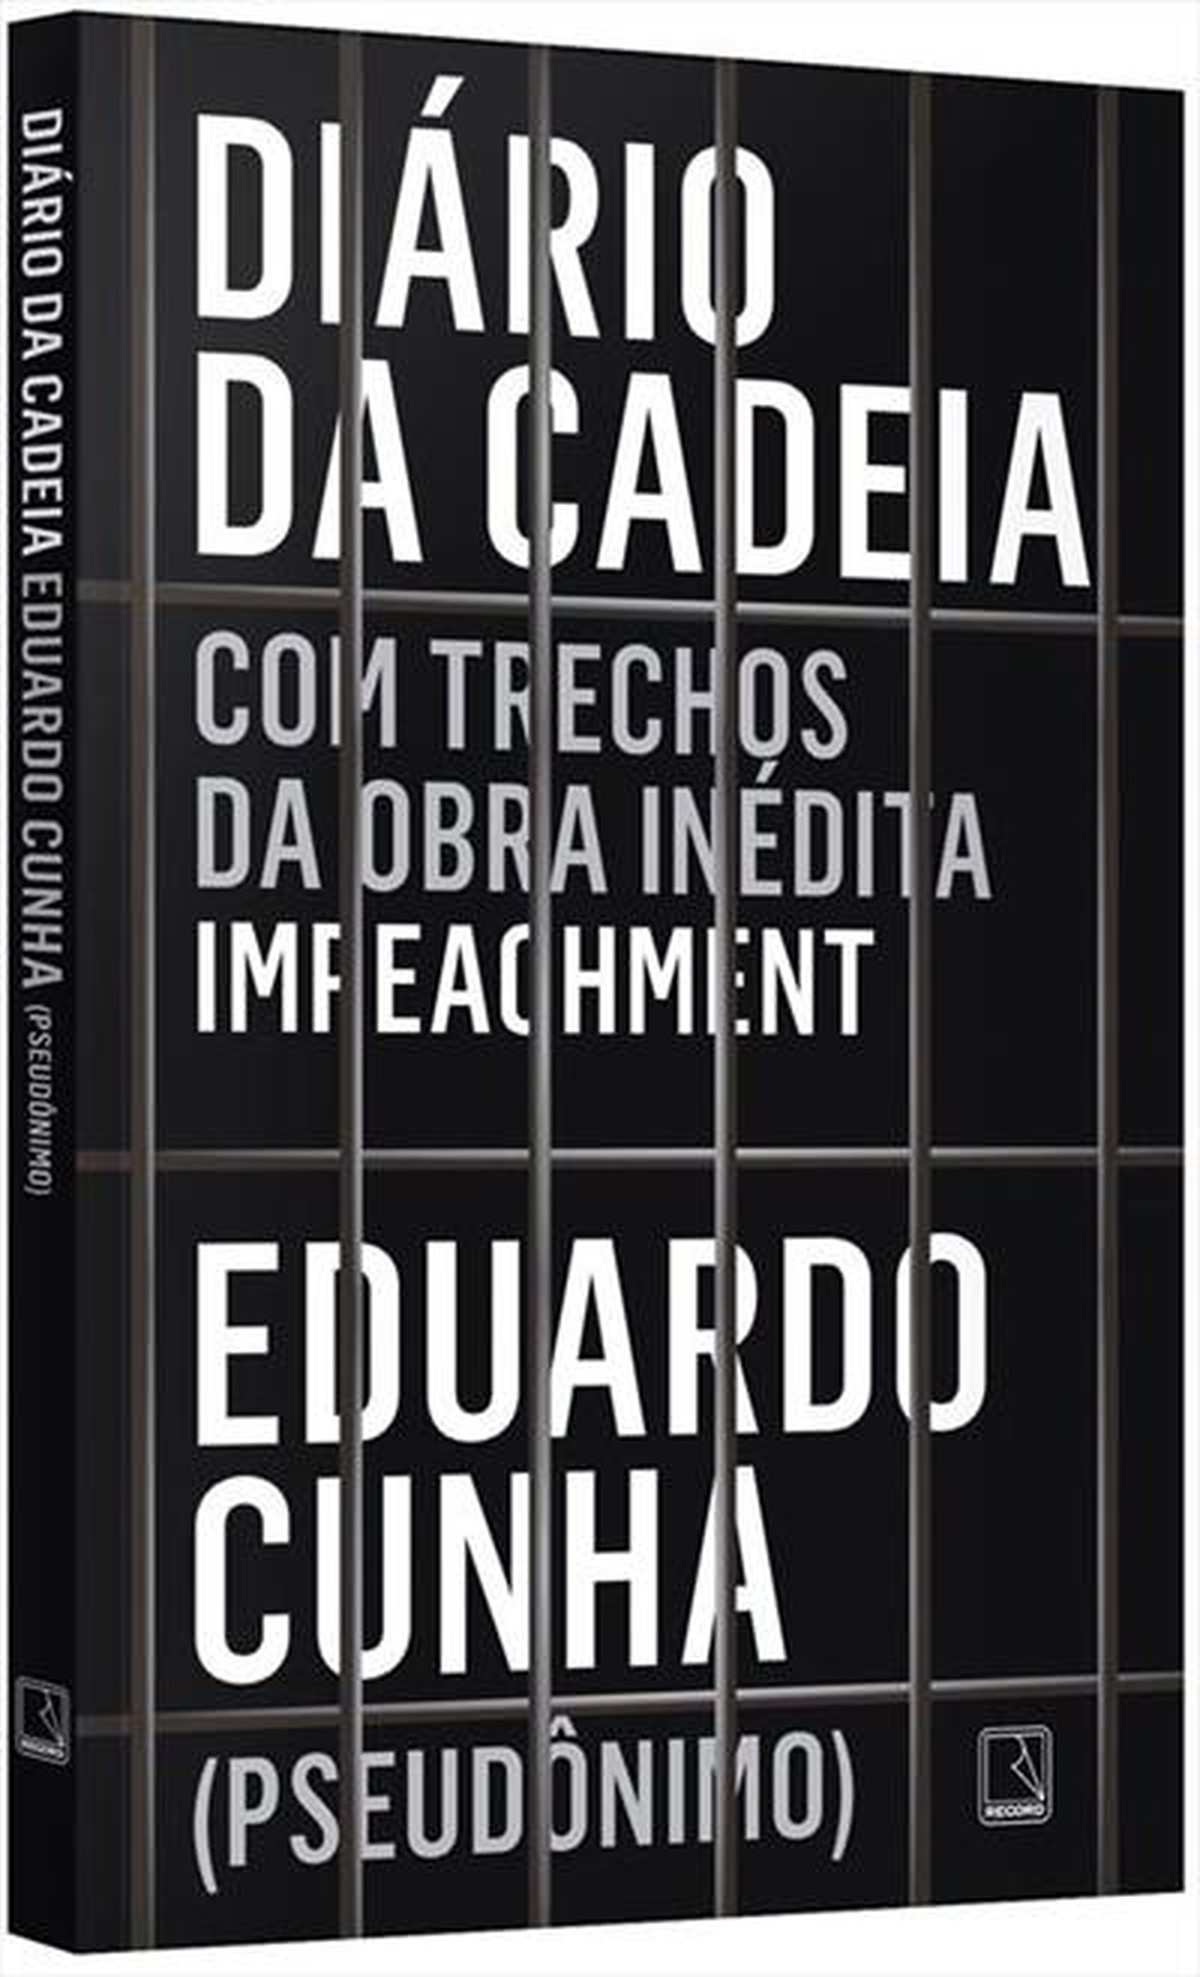 Juíza suspende venda de livro cujo autor usa pseudônimo 'Eduardo ... - Globo.com